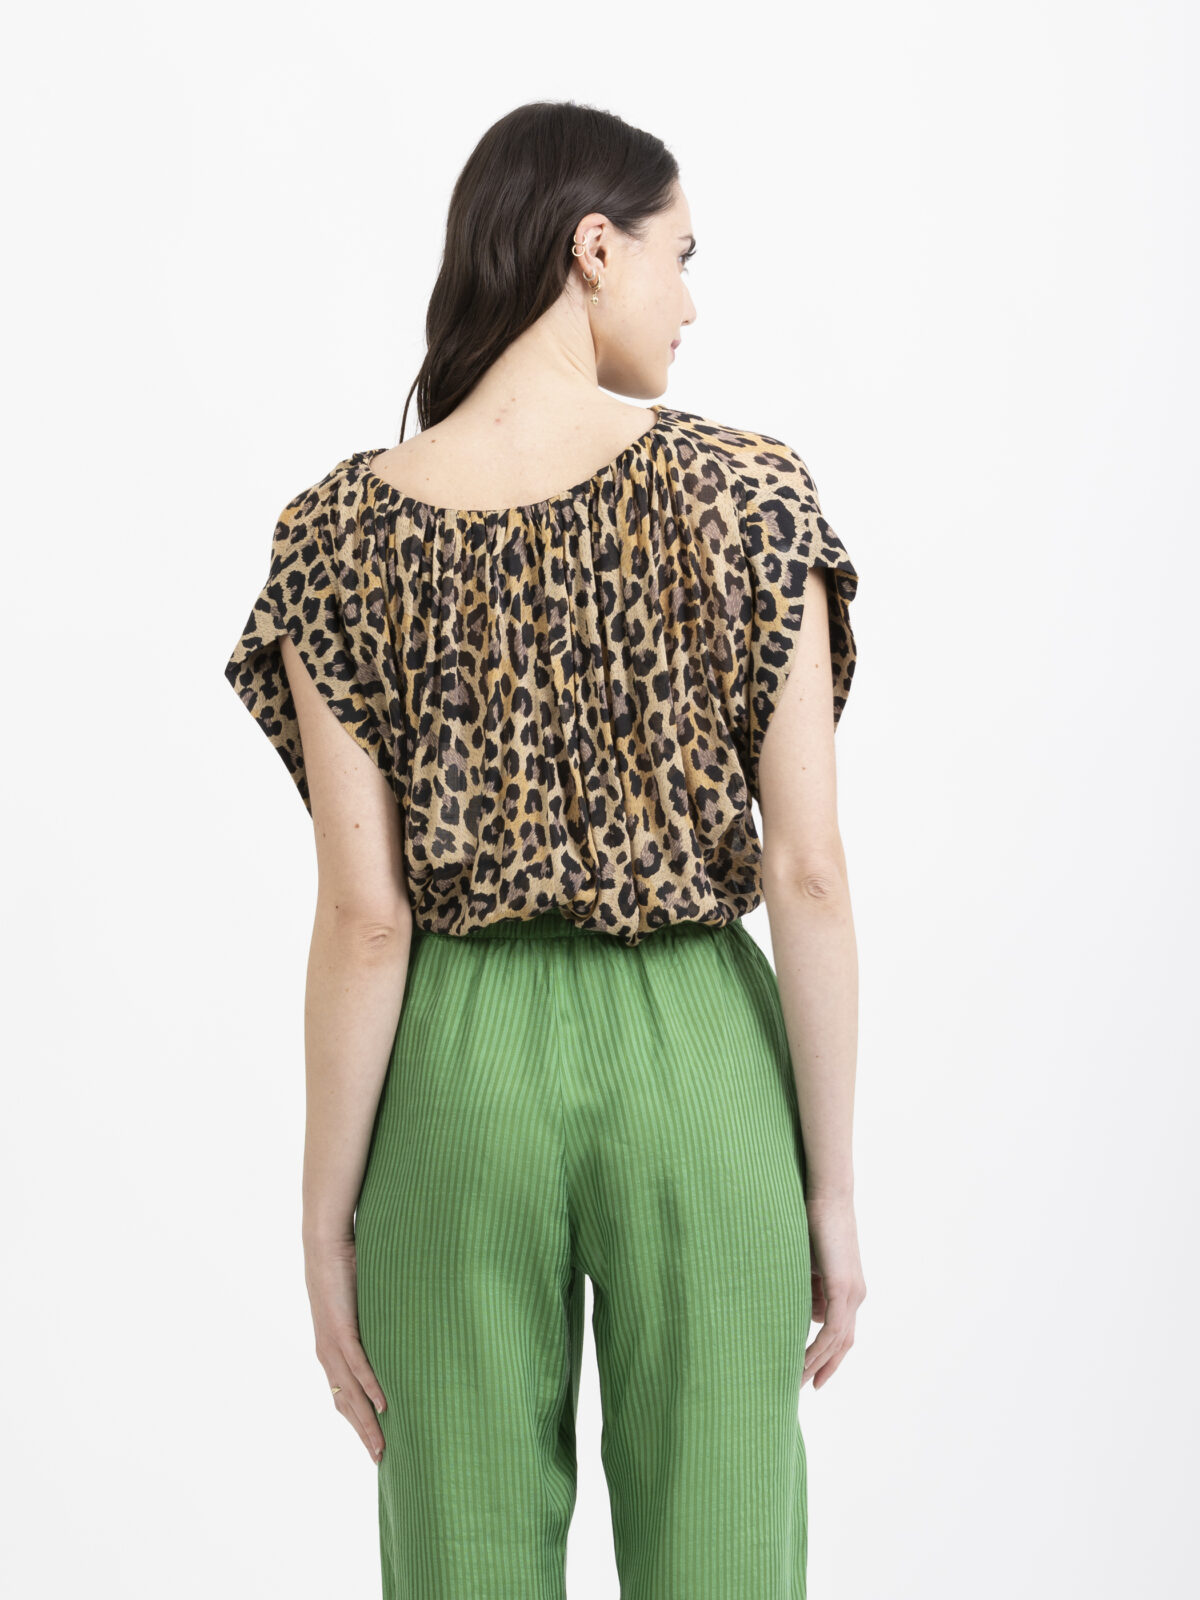 dafodil-leopard-blouse-fluid-wide-armholes-laurence-bras-matchboxathens